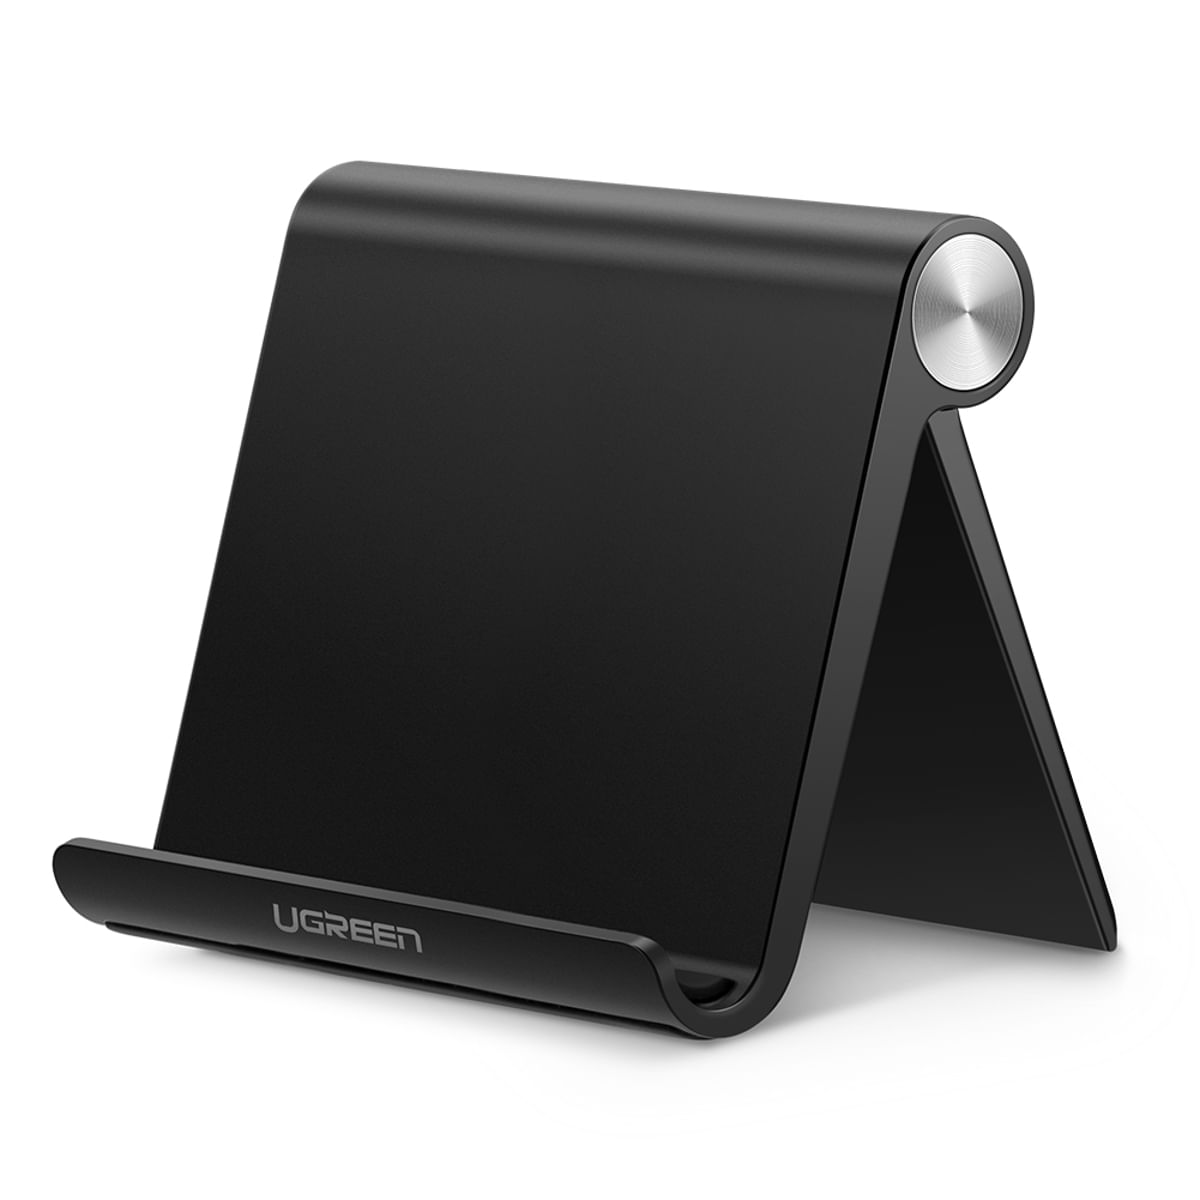 UGREEN Soporte Tablet Mesa, Soporte Ajustable Multiángulo para